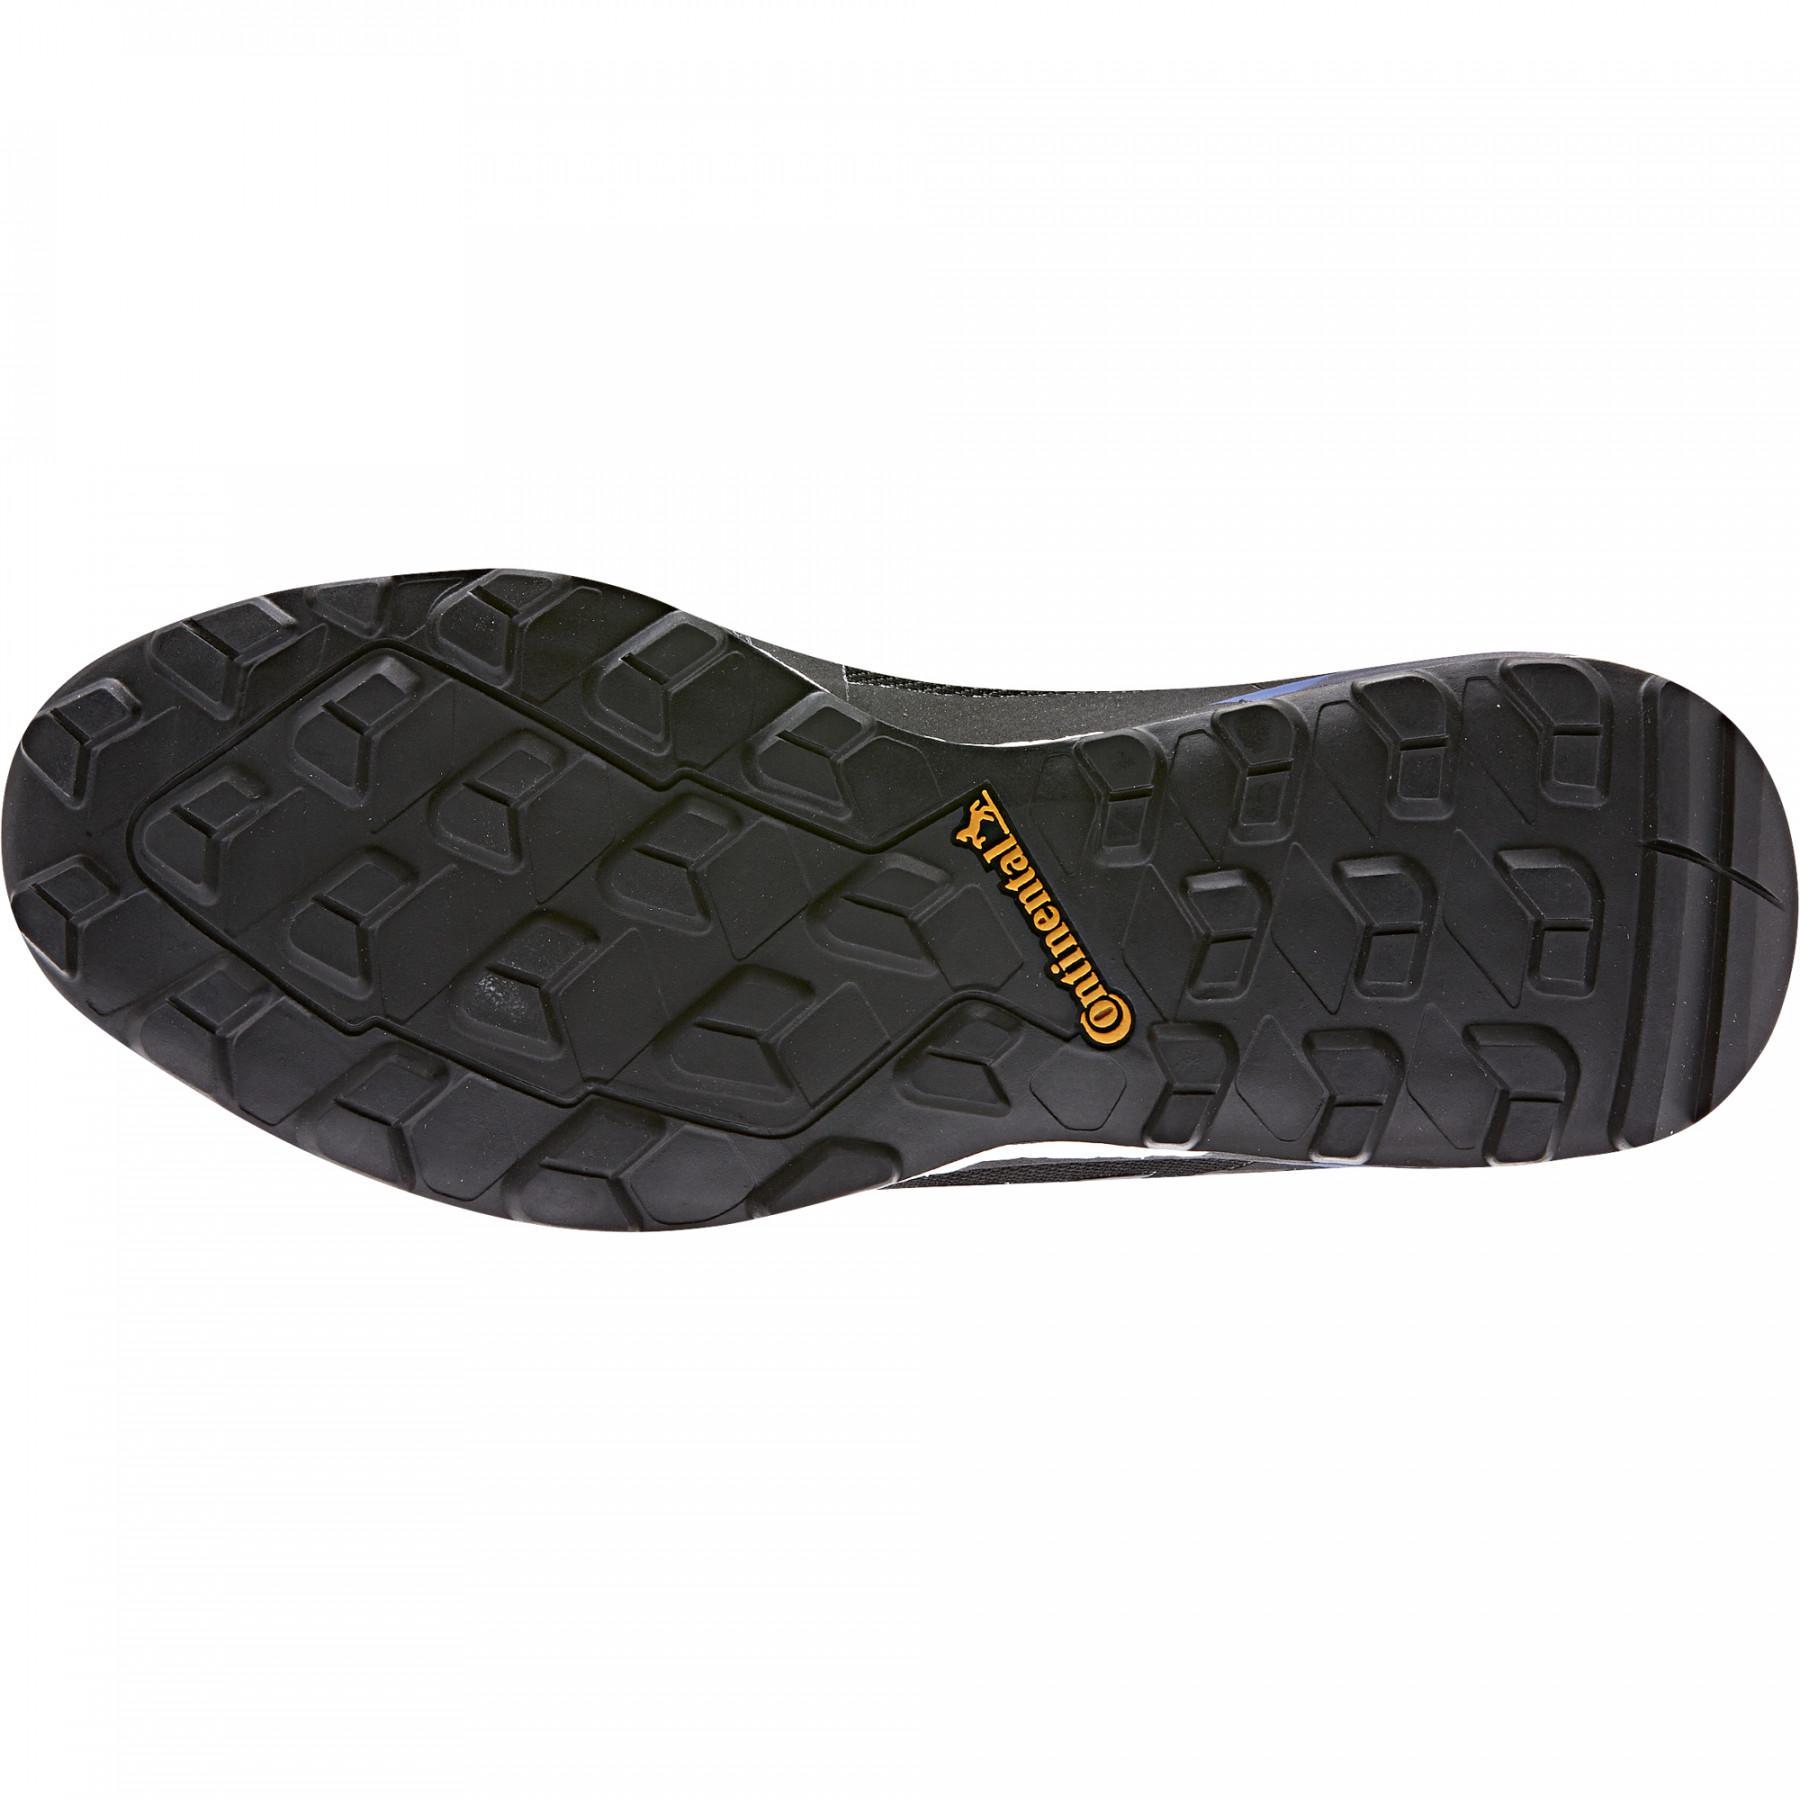 Trailrunning-Schuhe adidas Terrex Skychaser Gtx